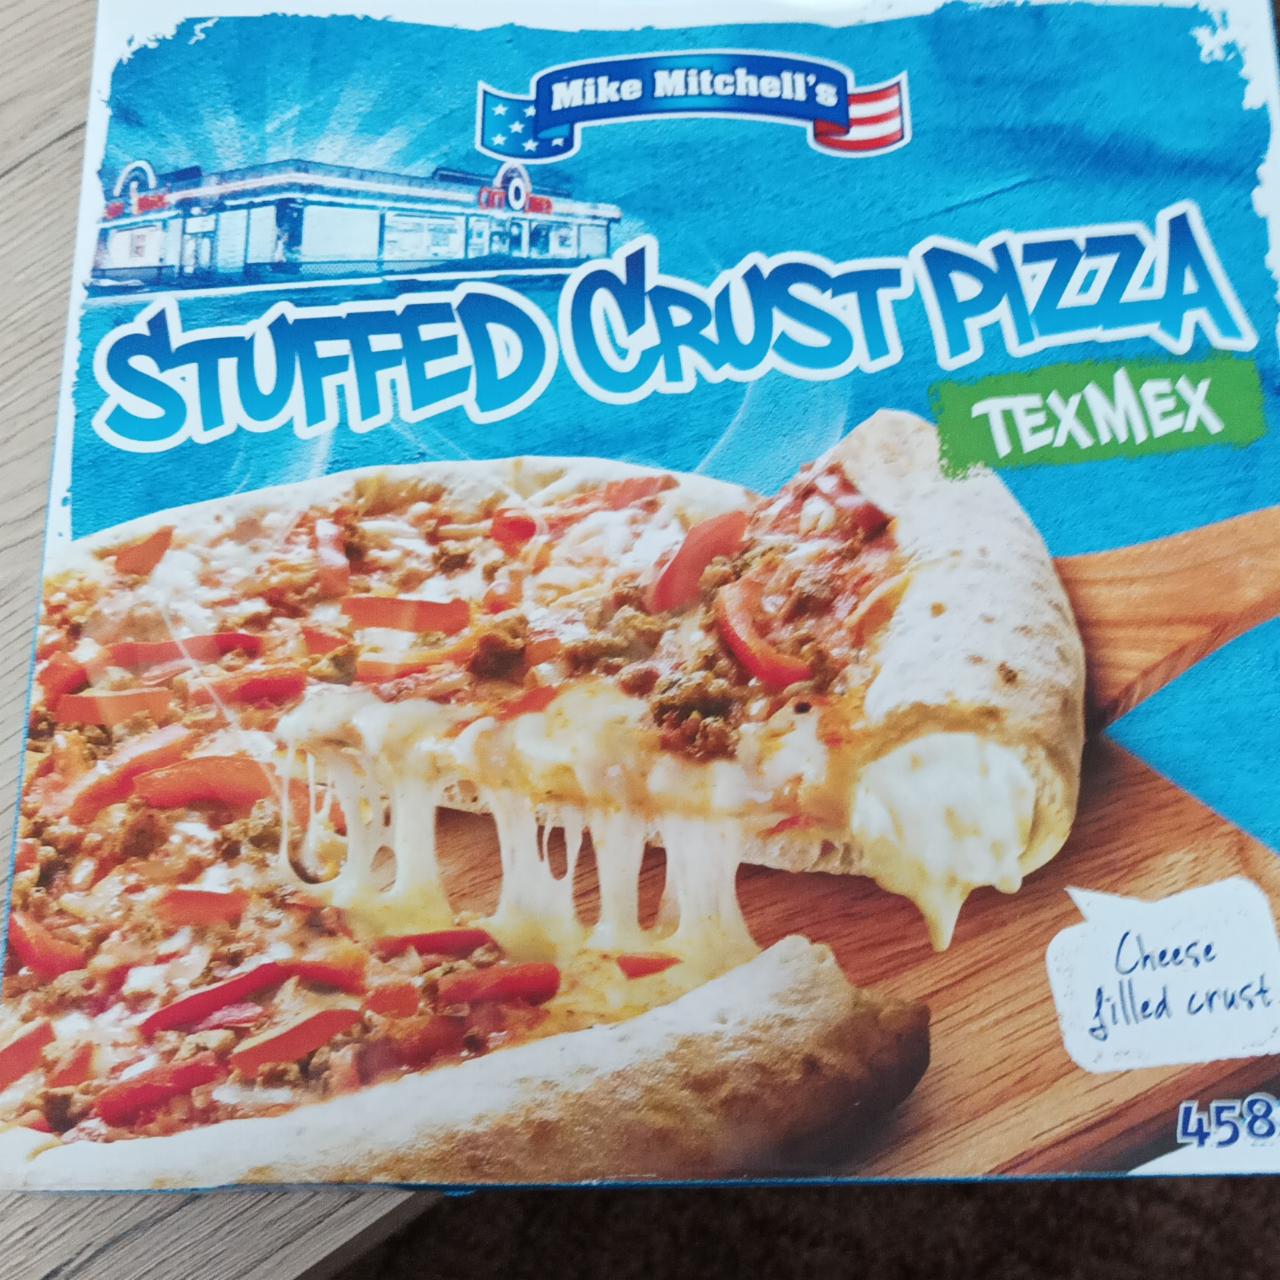 Fotografie - Stuffed Crust Pizza TexMex Mike Mitchell's